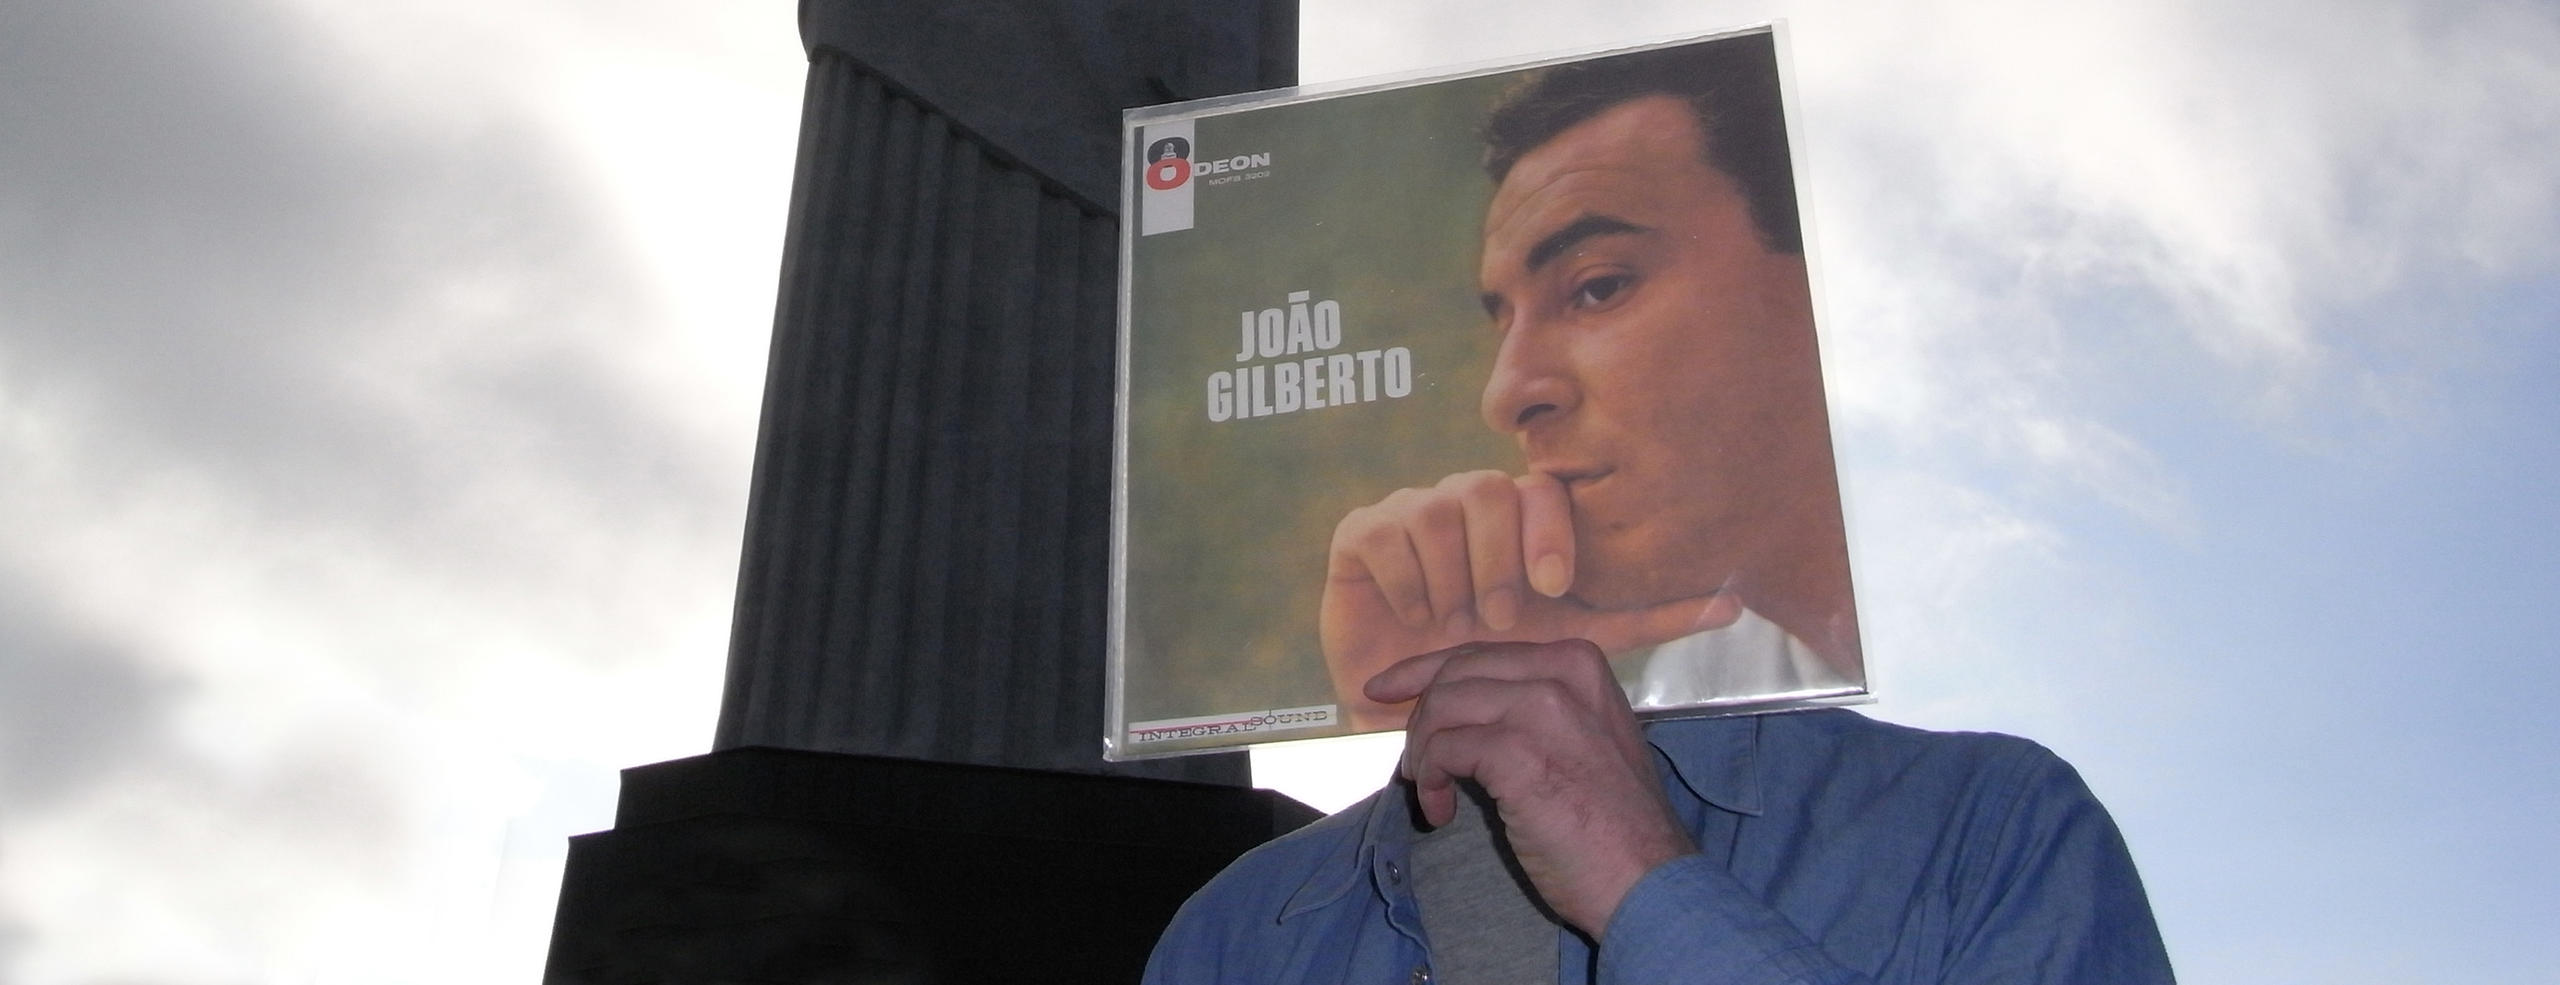 Marc Fischer posa com capa de disco de João Gilberto